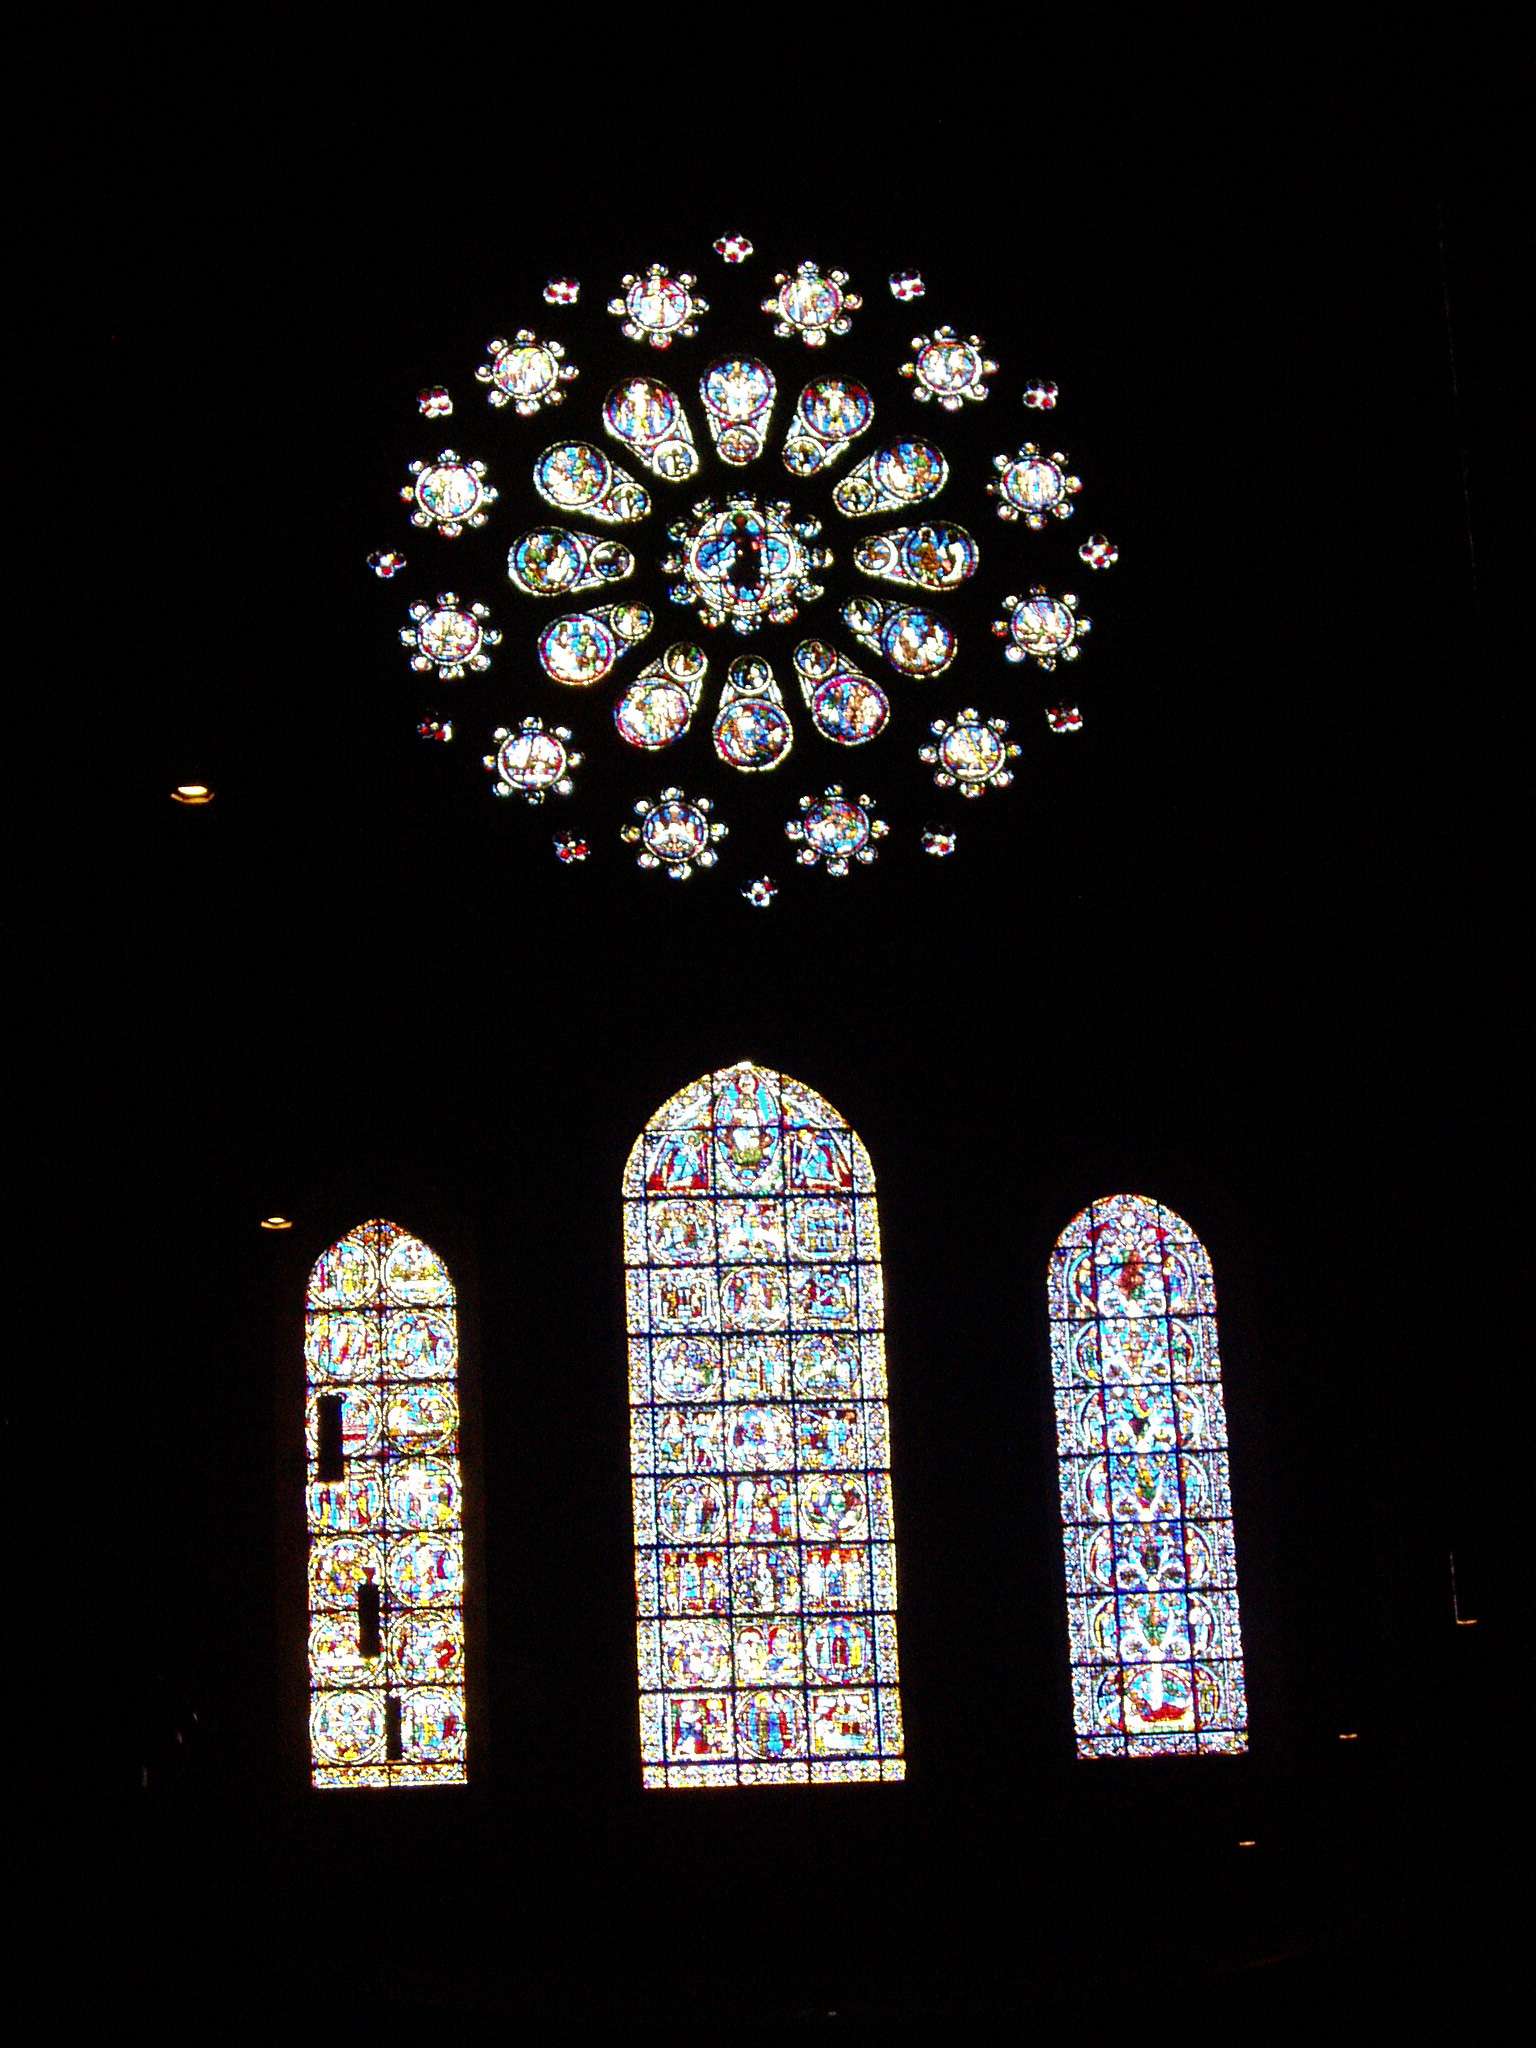 Chartres: Arte, espiritualidad y esoterismo. - Blogs de Francia - Arquitectura de la catedral de Chartres (7)